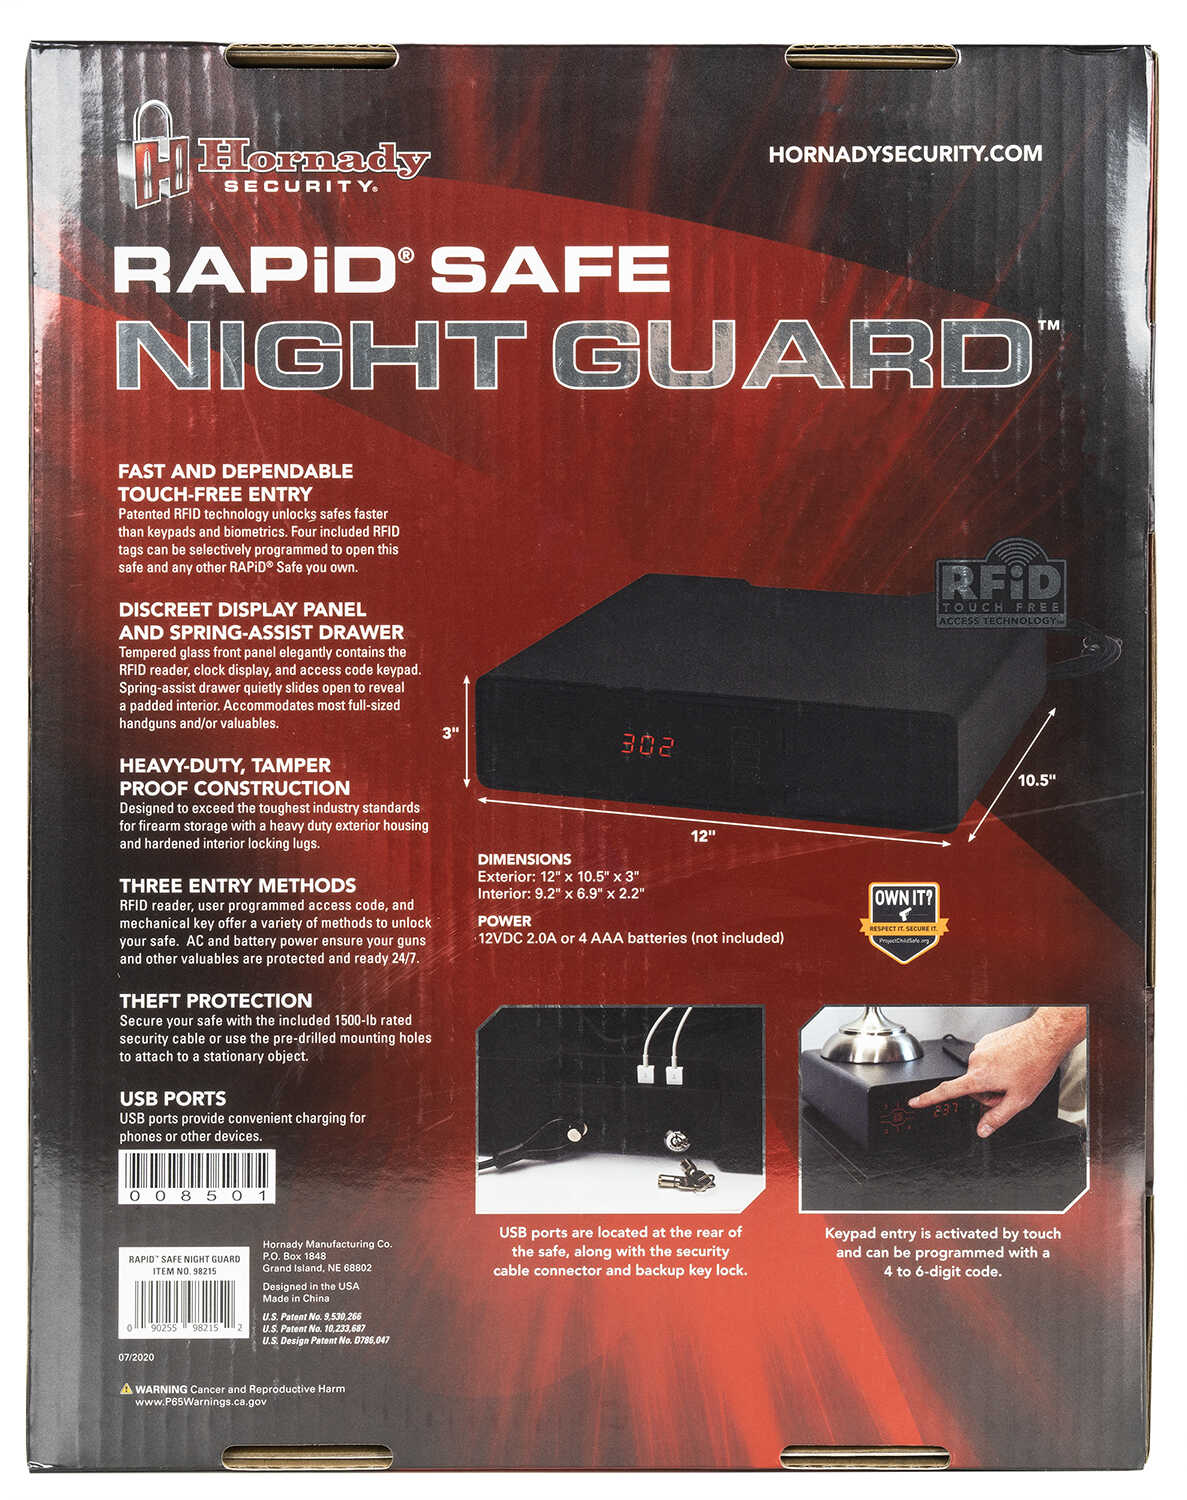 Hornady Rapid Night Guard RFID-img-2